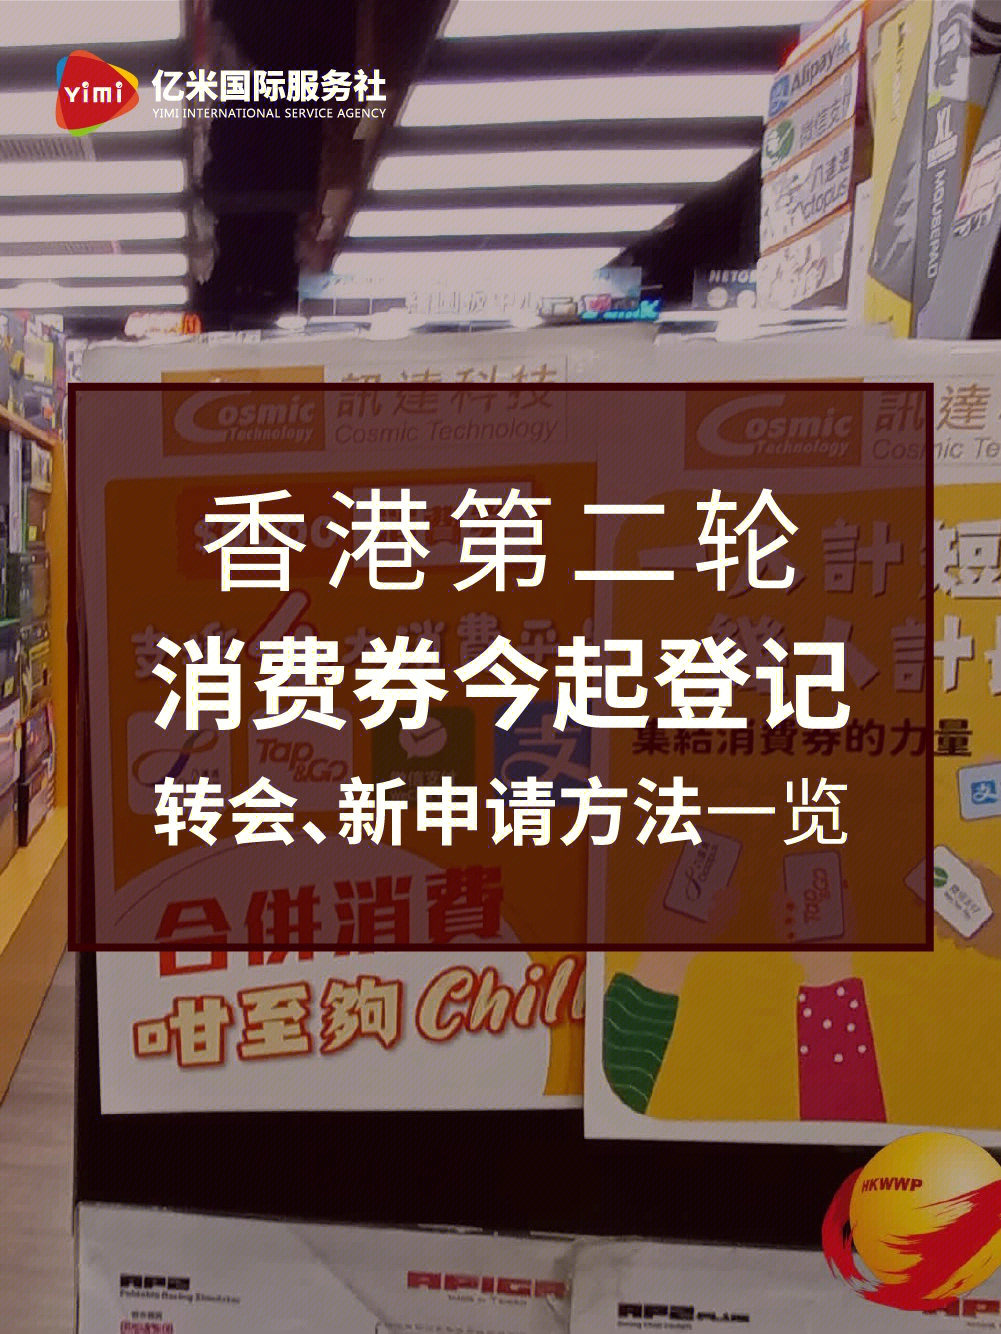 香港消费券图片